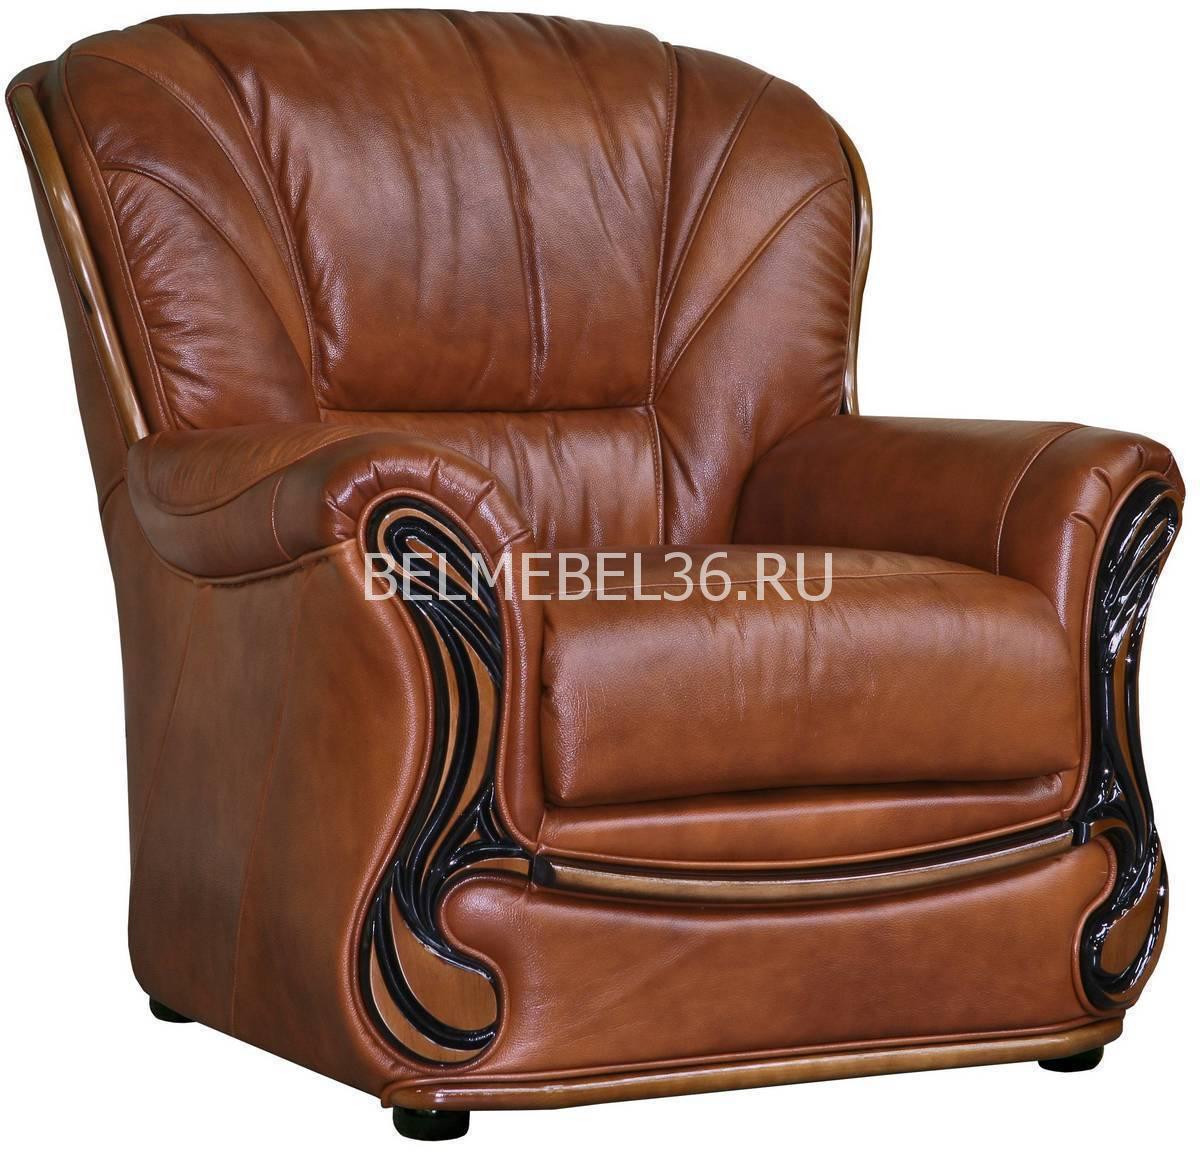 Кресло Изабель 2 (12) П-Д067 | Белорусская мебель в Воронеже